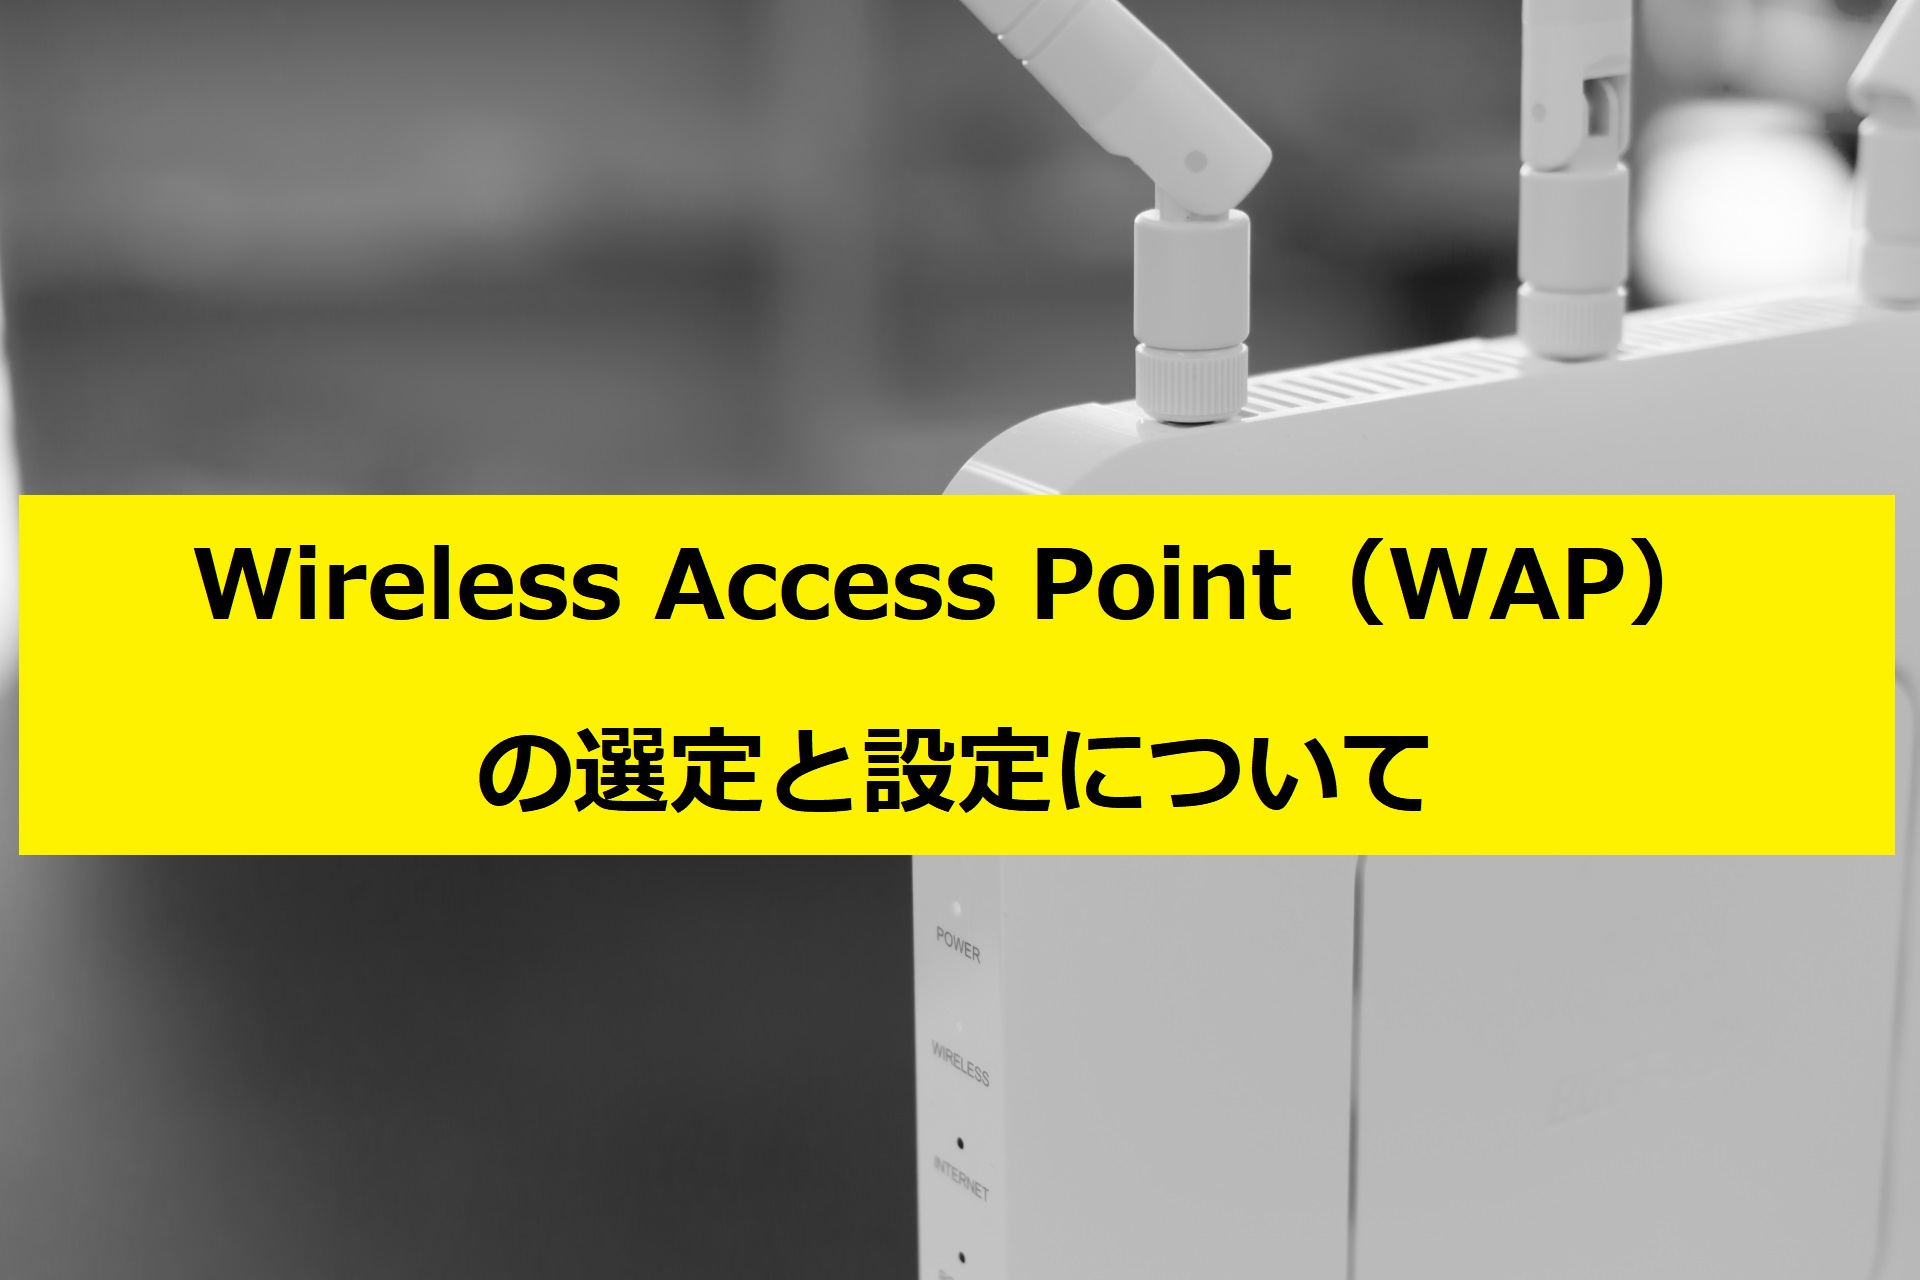 Wireless Access Point（WAP）の選定と設定について